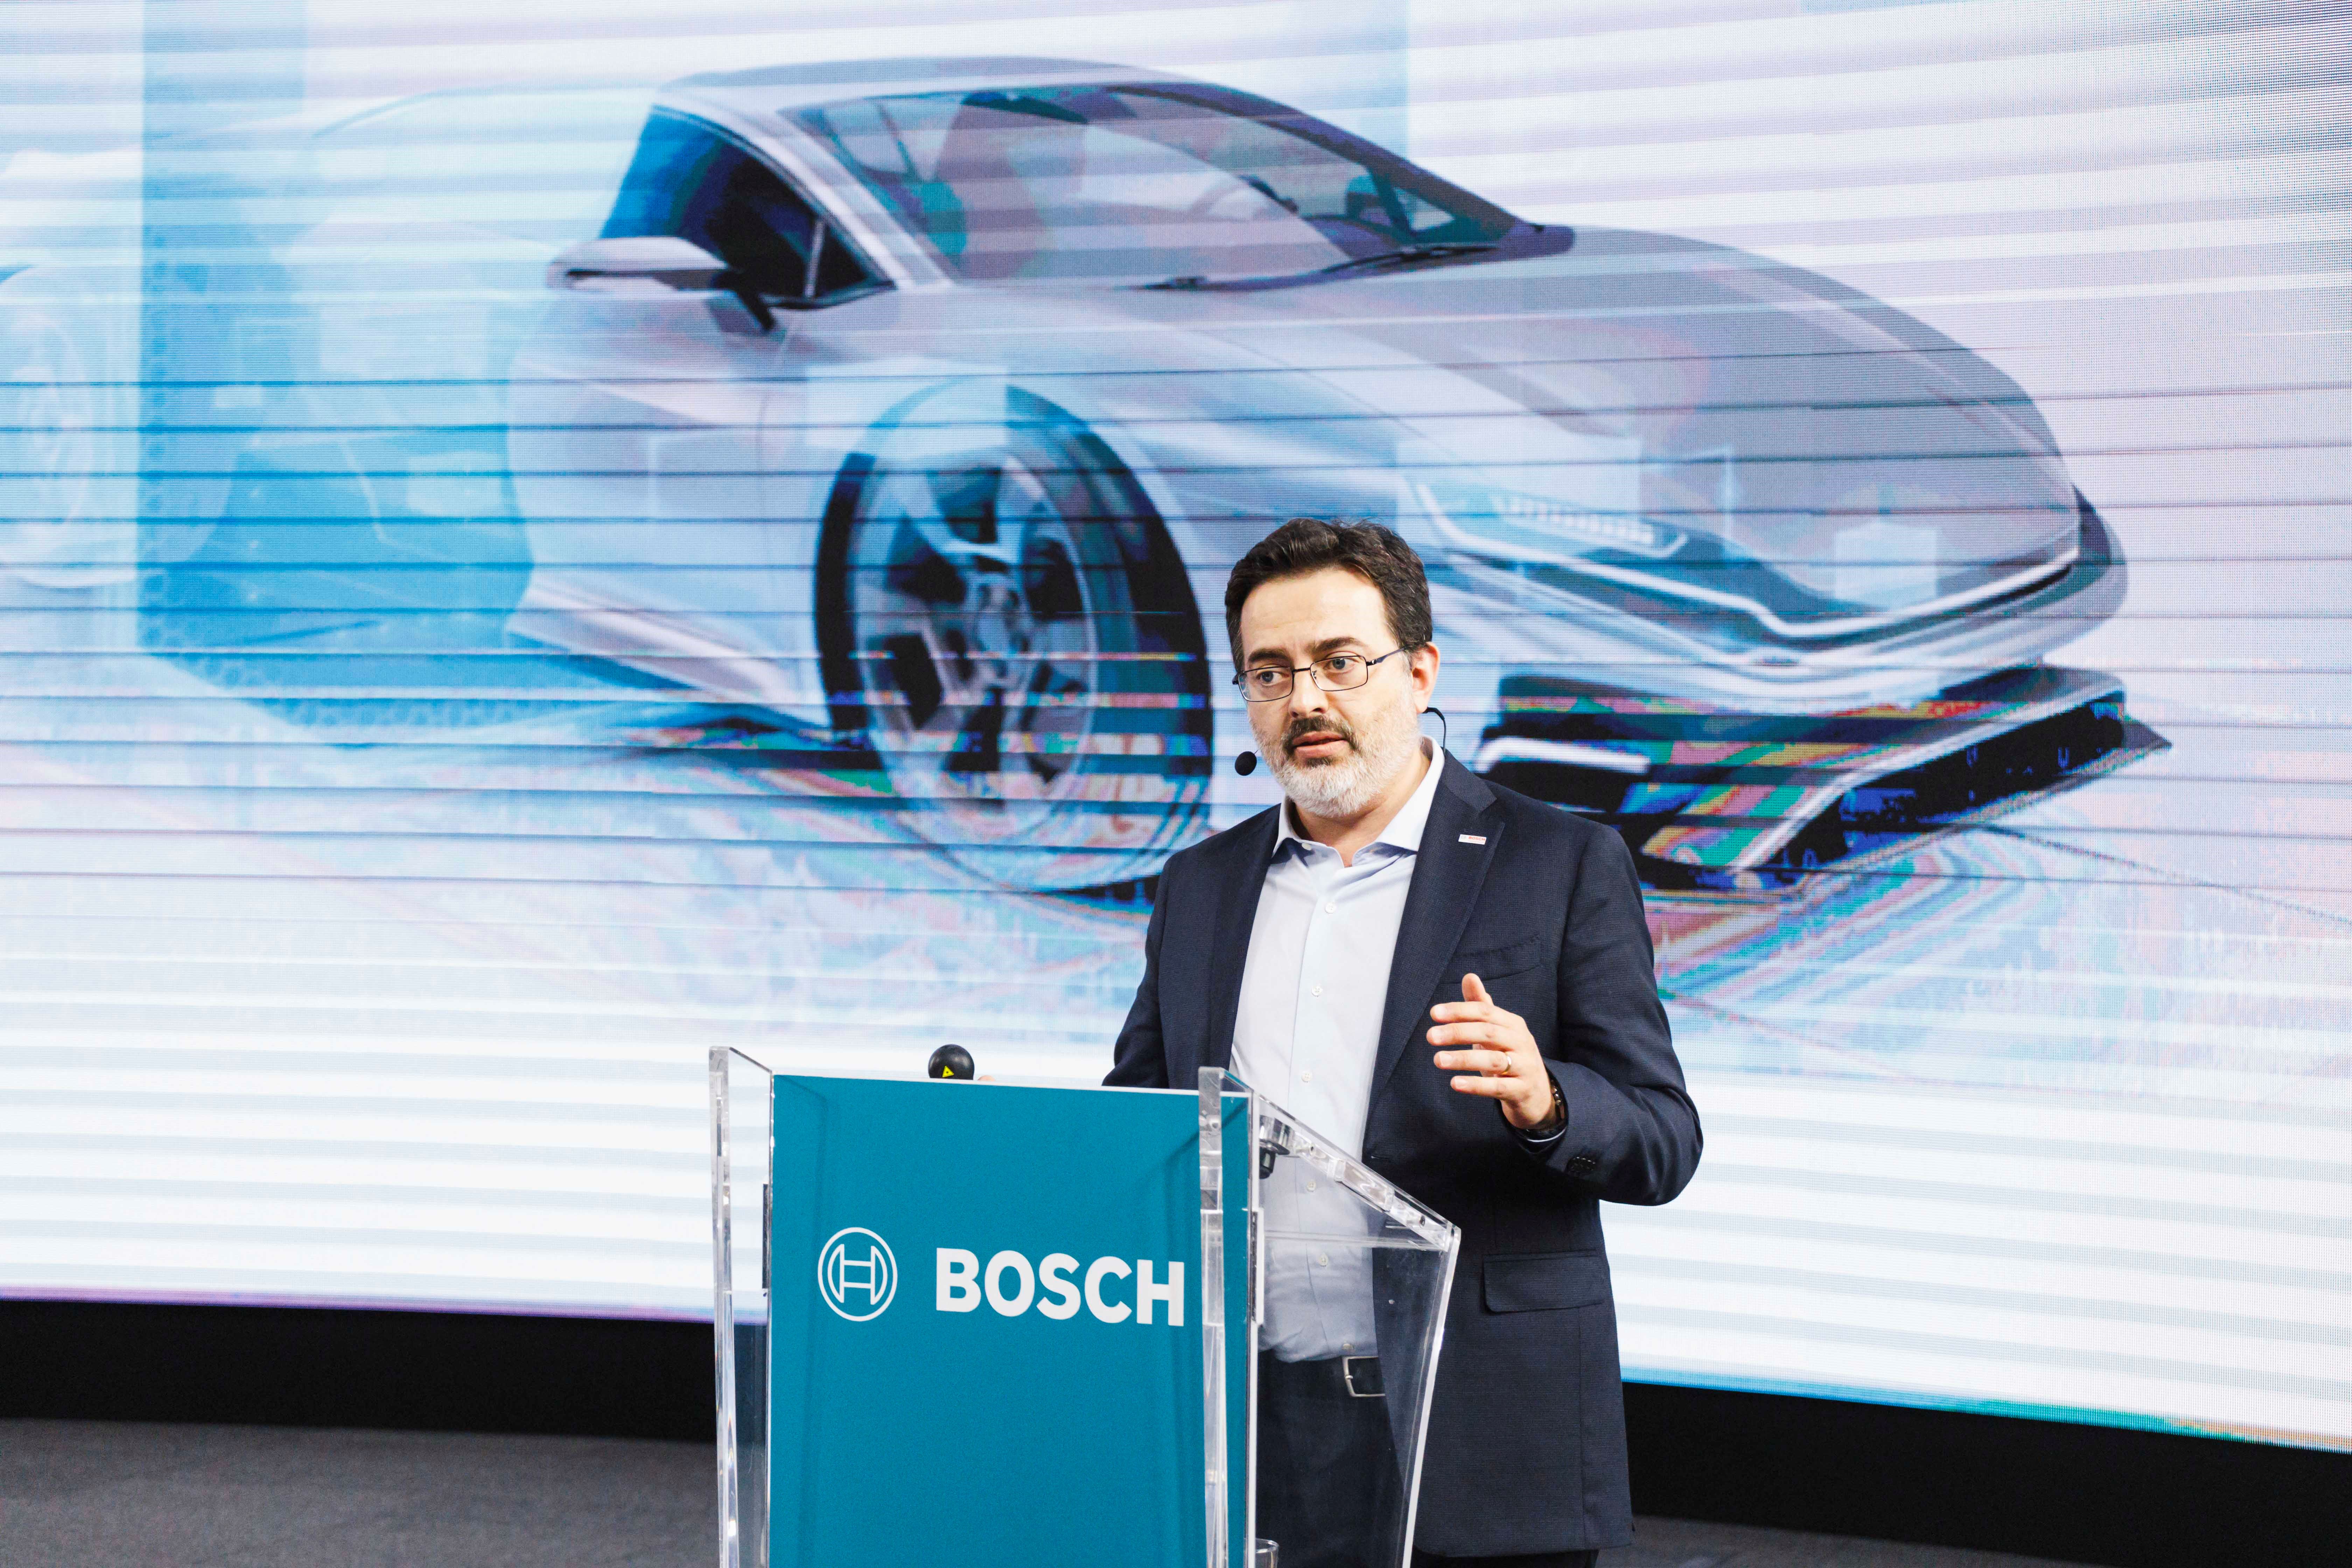 Progetti per la mobilità, sicurezza e idrogeno: Bosch guida avanti